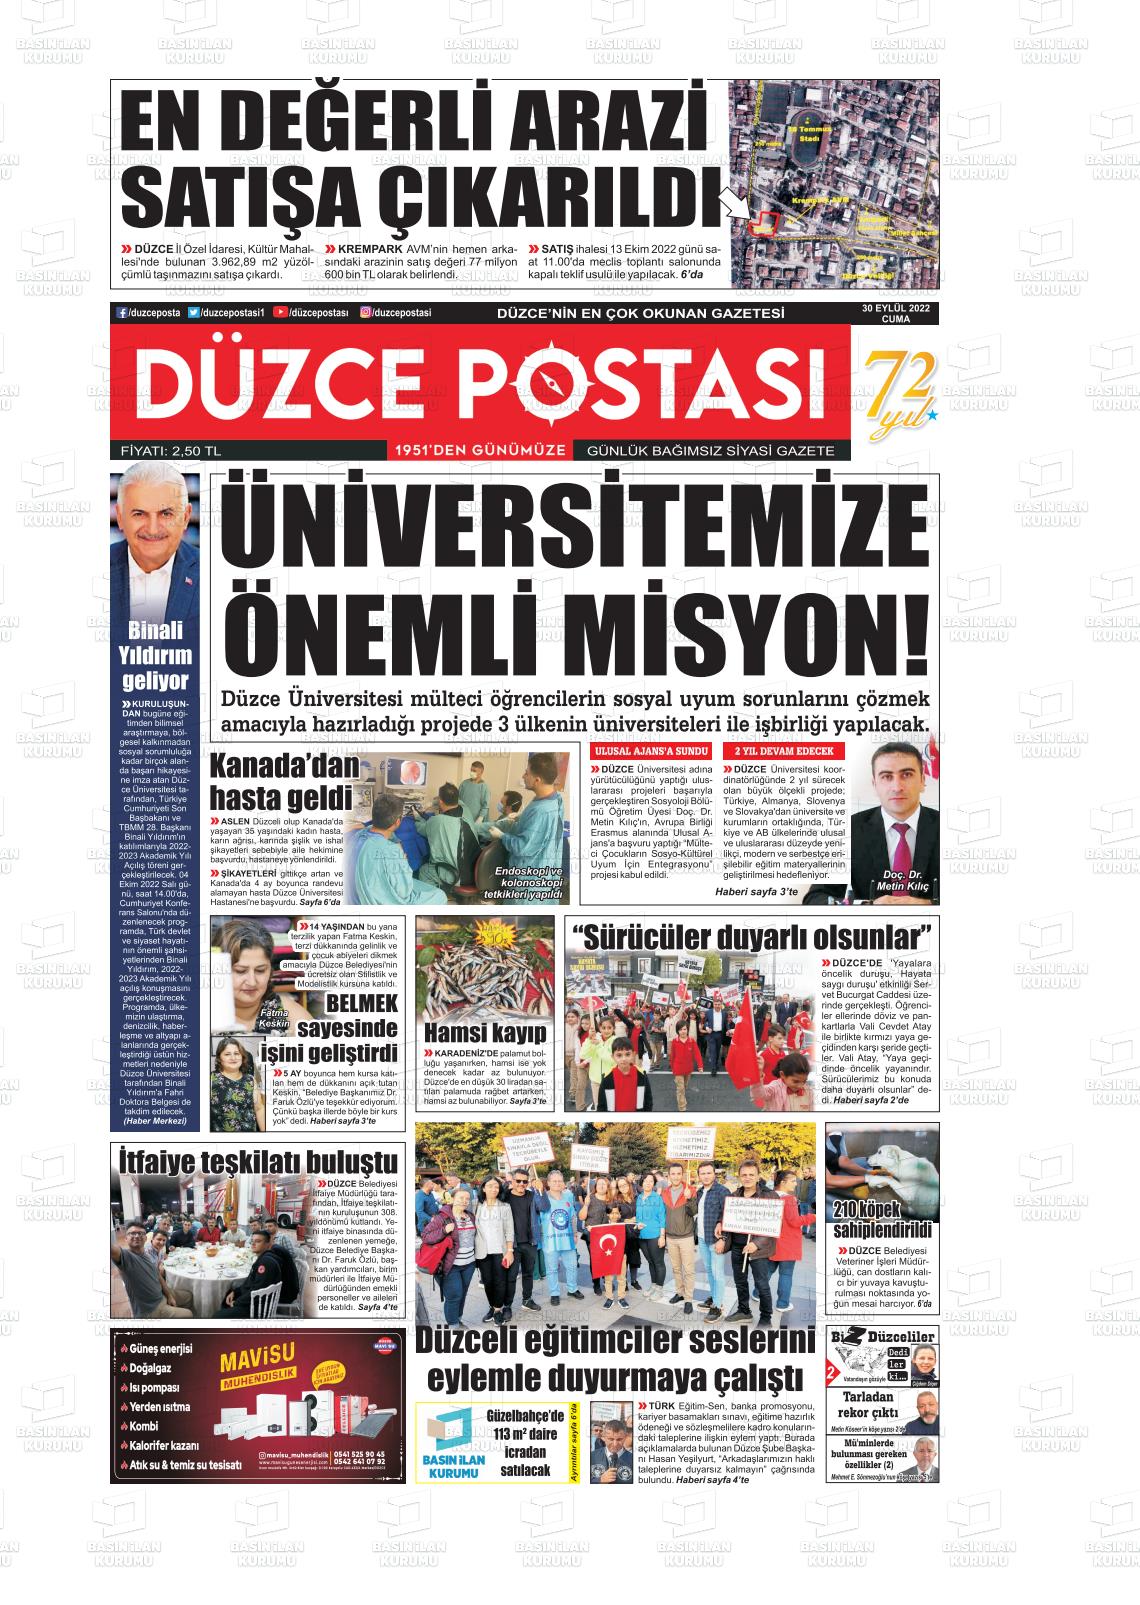 30 Eylül 2022 Düzce Postası Gazete Manşeti